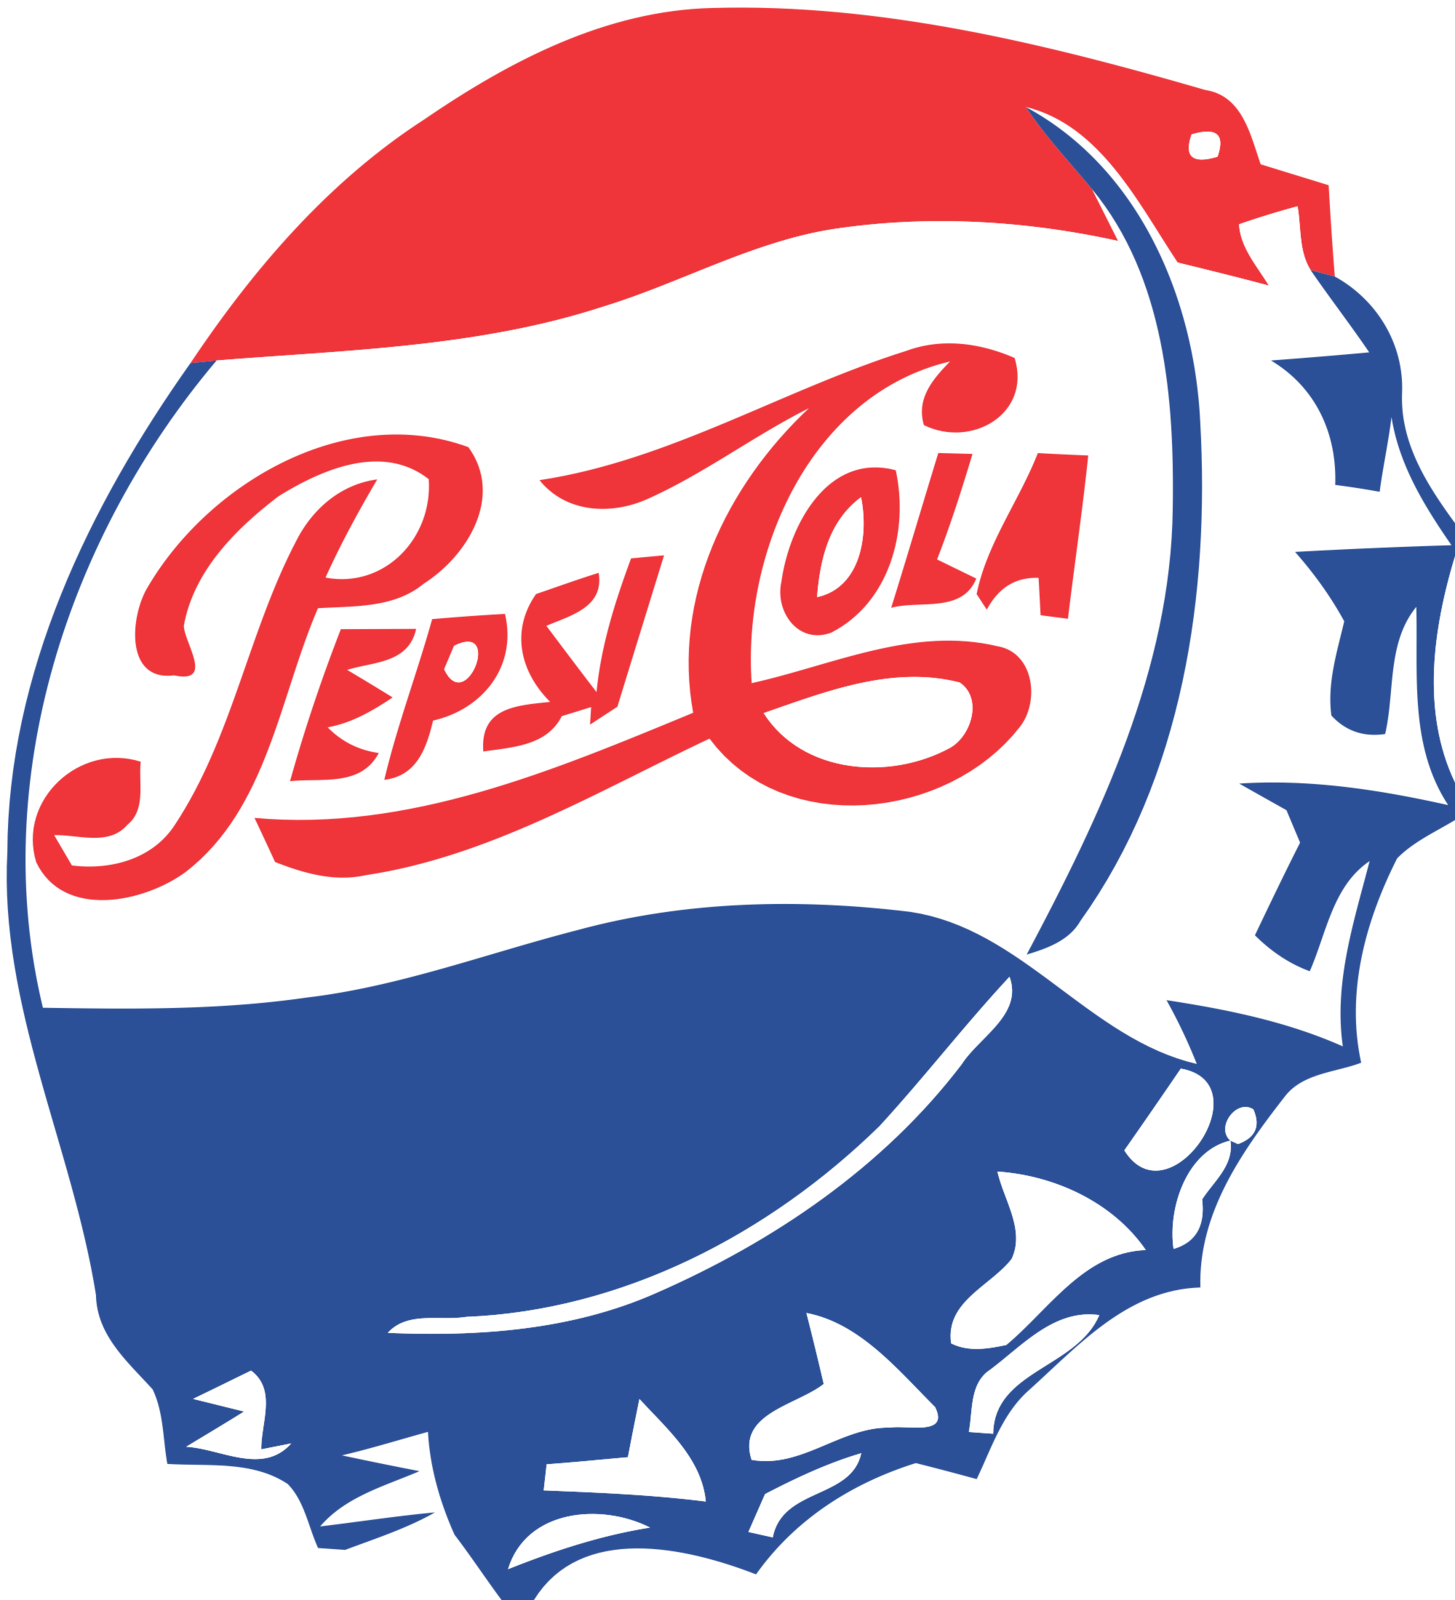 Pepsi Classic Cap Background PNG Image